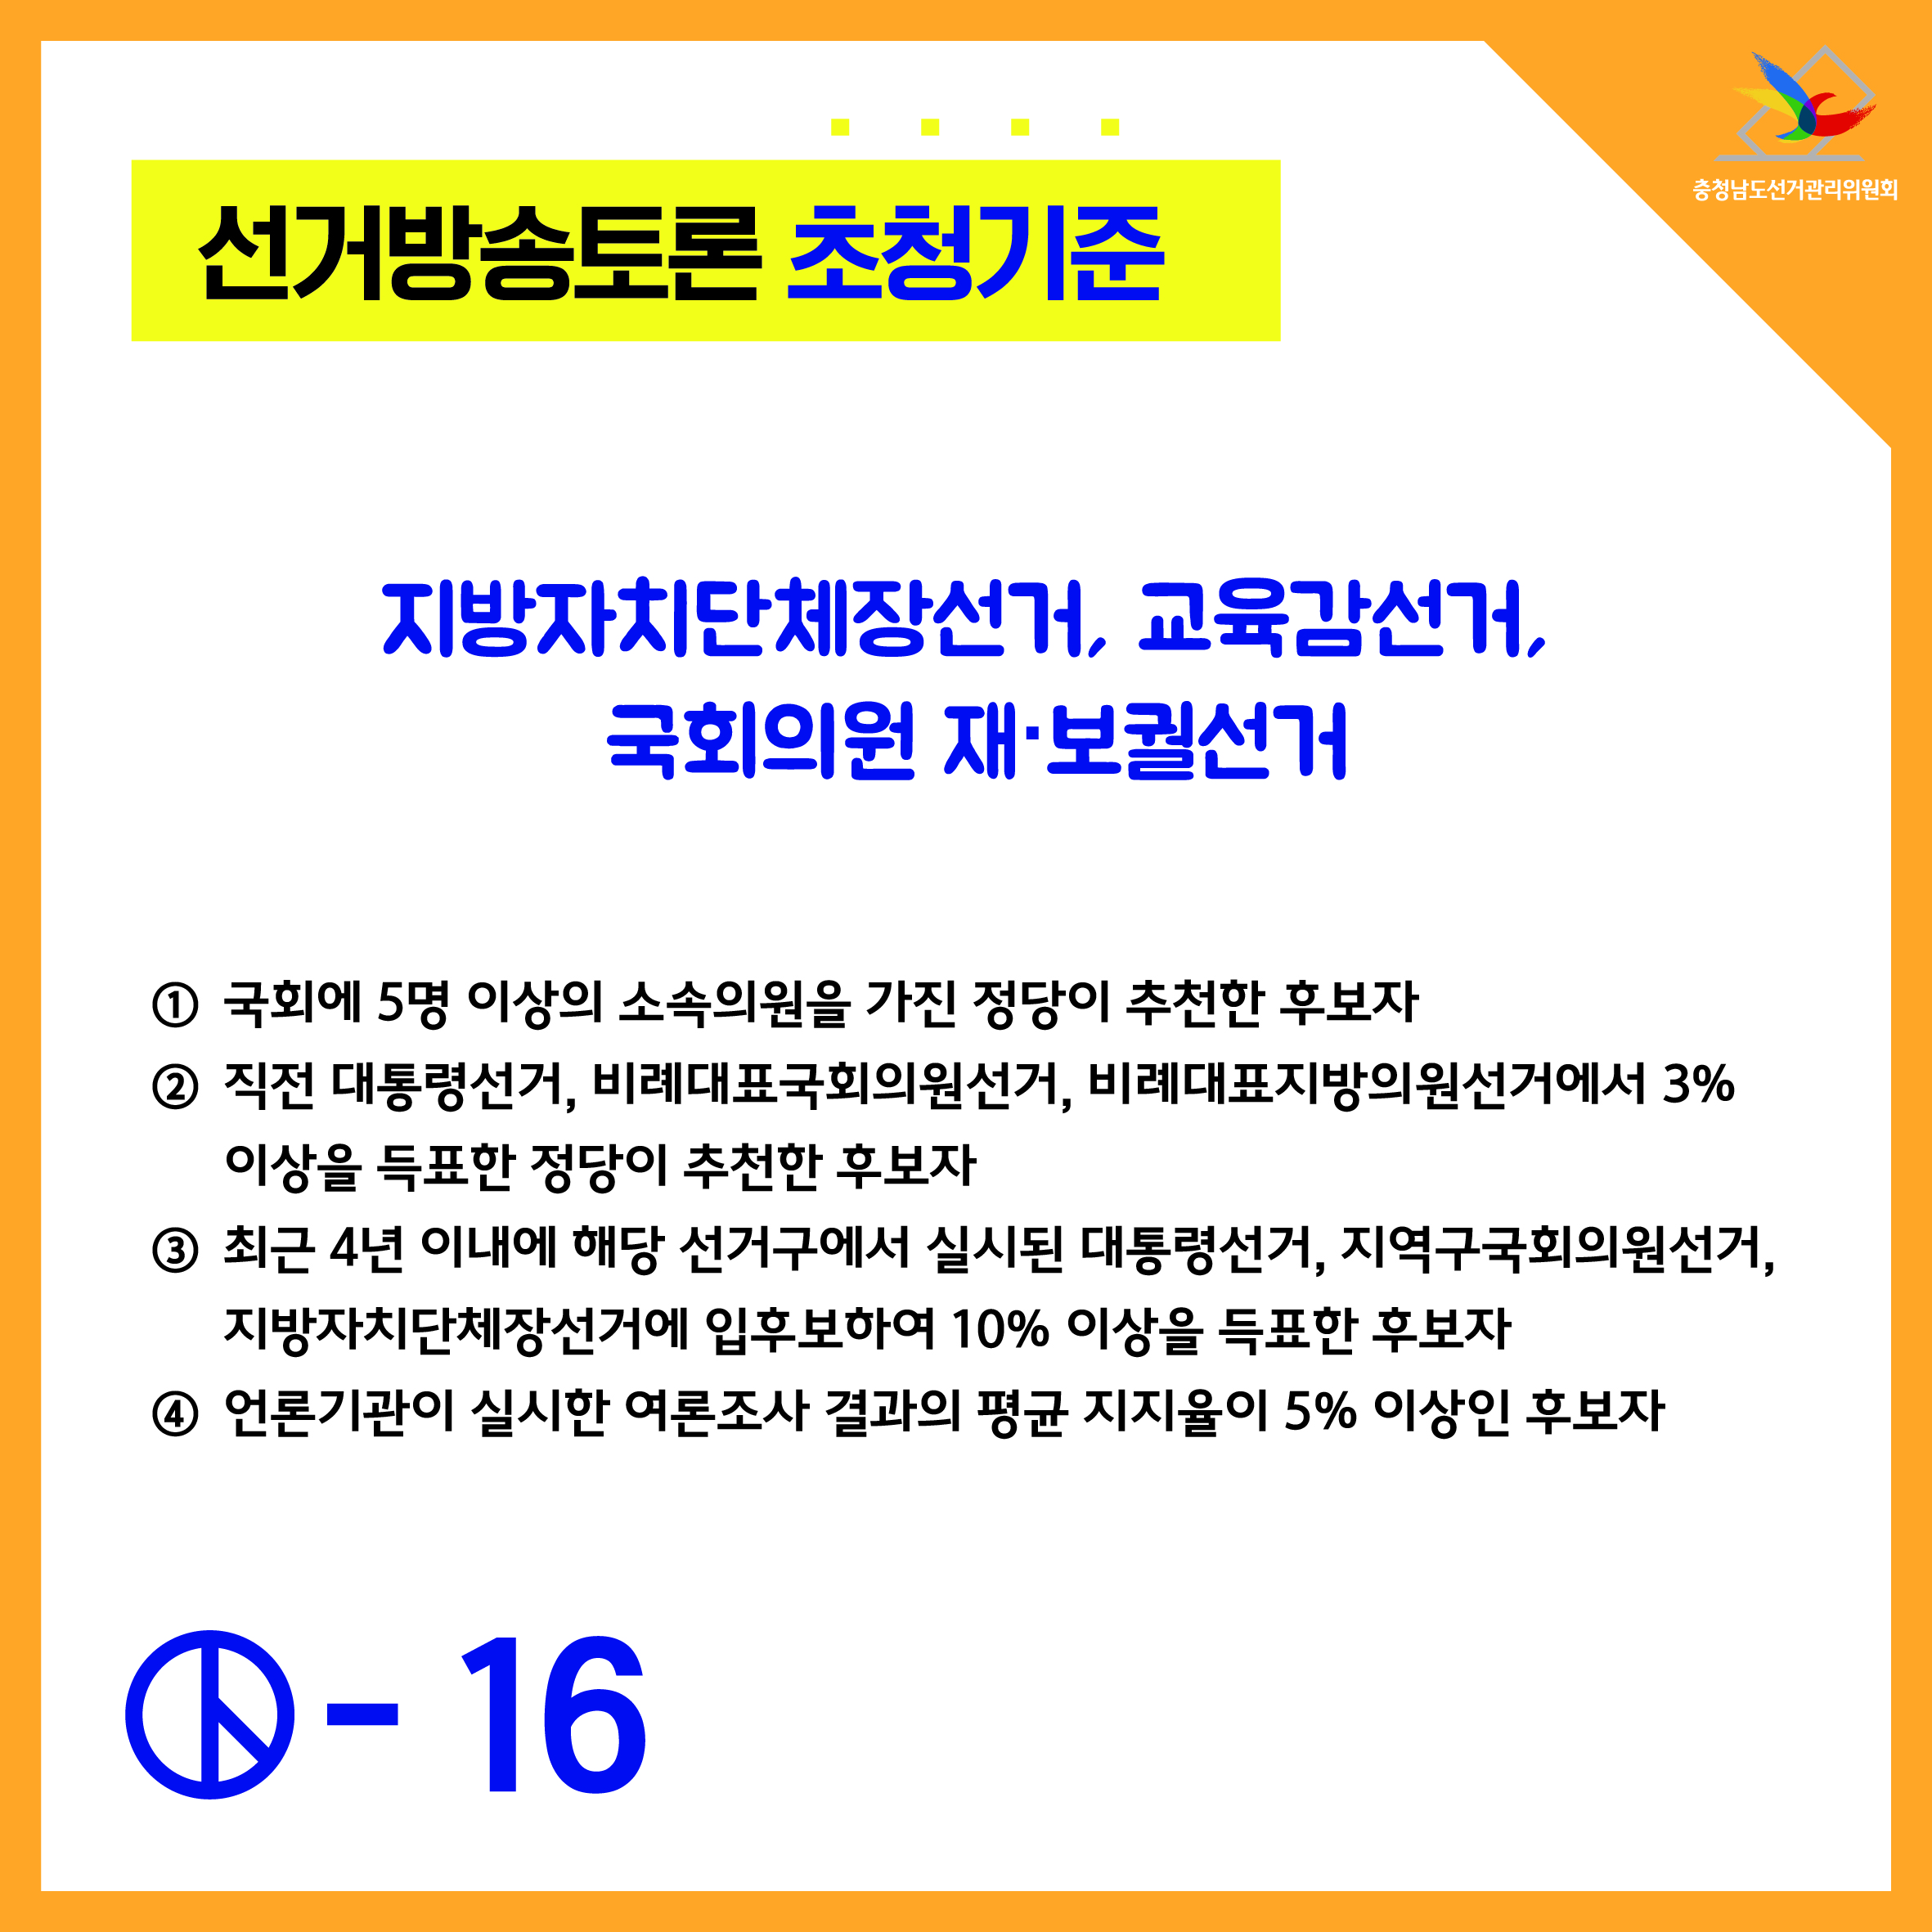 선거방송토론 초청기준-지방자치단체장선거, 교육감선거, 국회의원 재보권선거